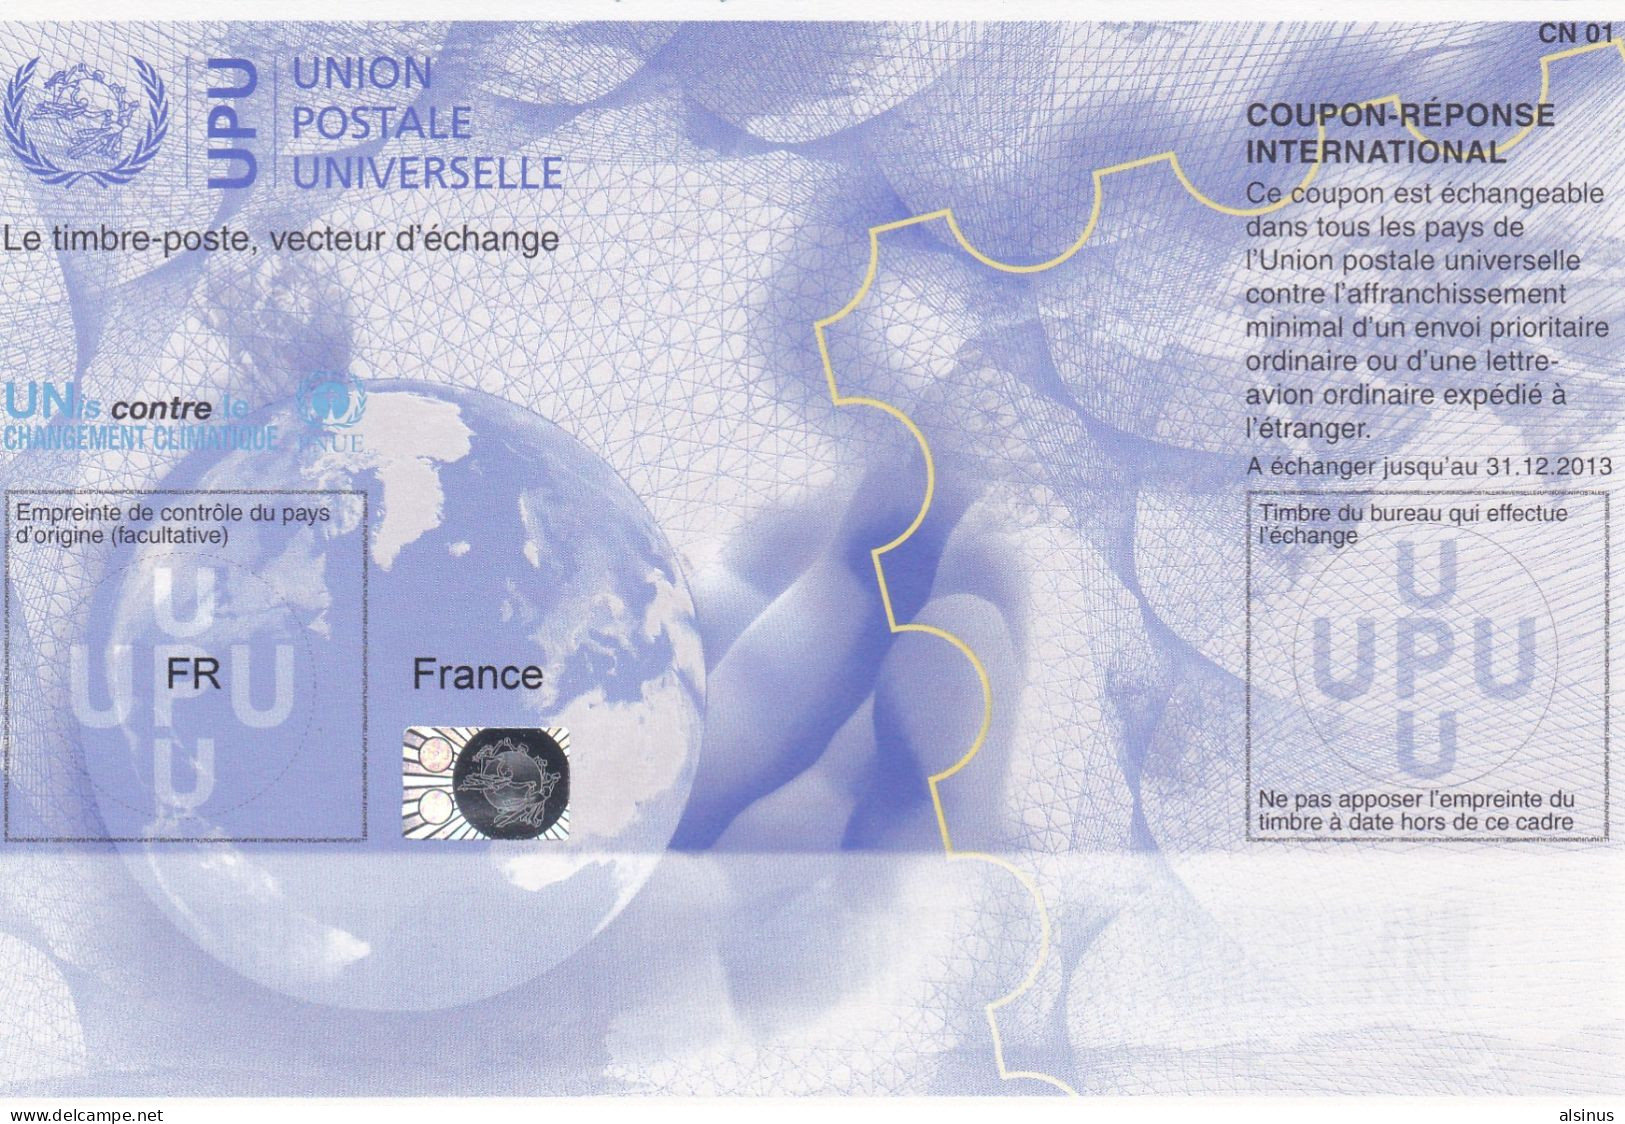 2013 - UNION POSTALE UNIVERSELLE - FRANCE - COUPON ECHANGEABLE - LETTTRE PRIORITAIRE - LETTRE-AVION ORDINAIRE - 1903-60 Sower - Ligned